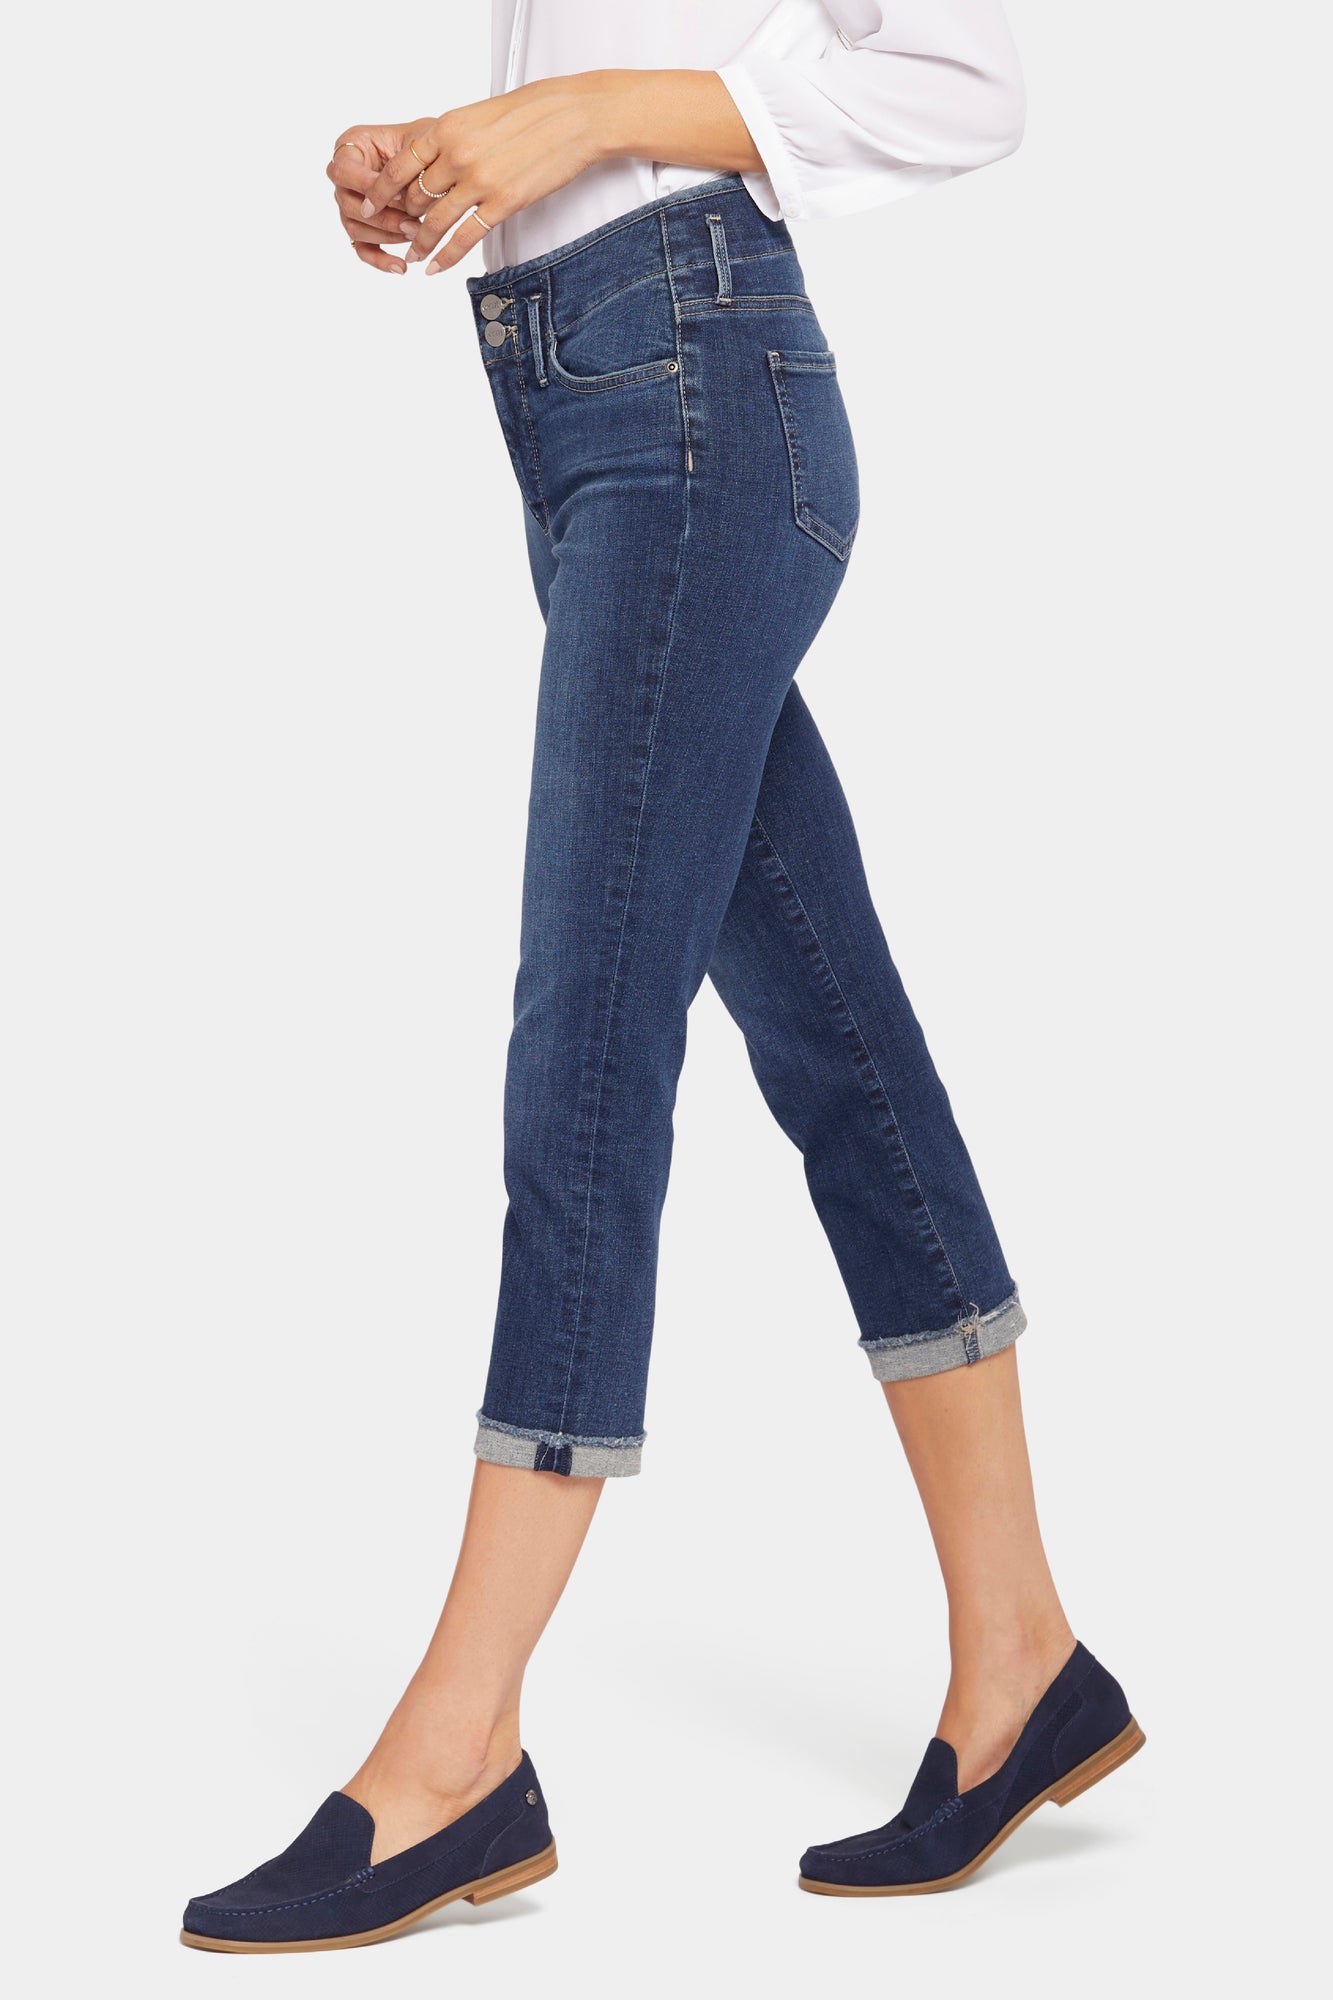 NYDJ Chloe Capri Jeans In Petite With Cuffs - Dimension